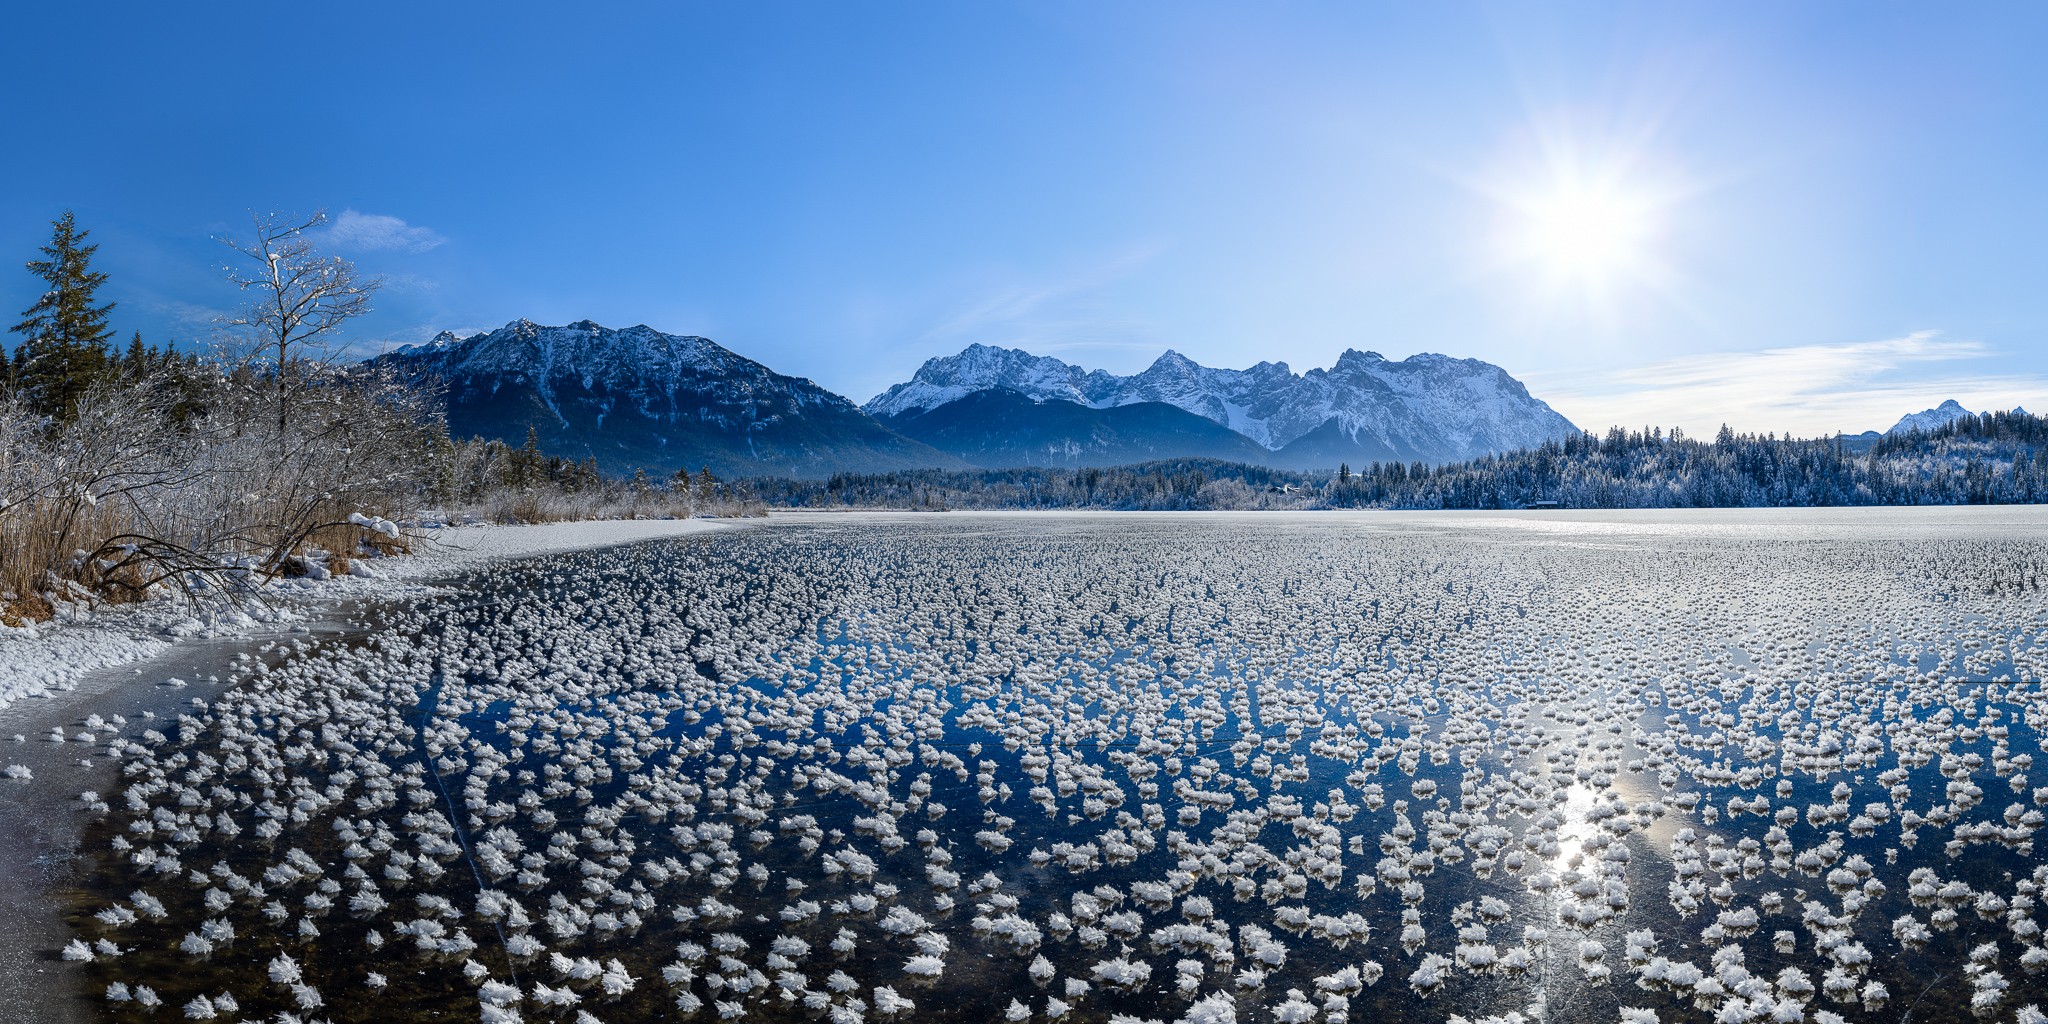 Eisrosen am Barmsee. Winterlandschaft am zugefrorenem See mit vielen Eisrosen / Eiskristallen. Blick auf die Soierngruppe und das Karwendelgebirge.